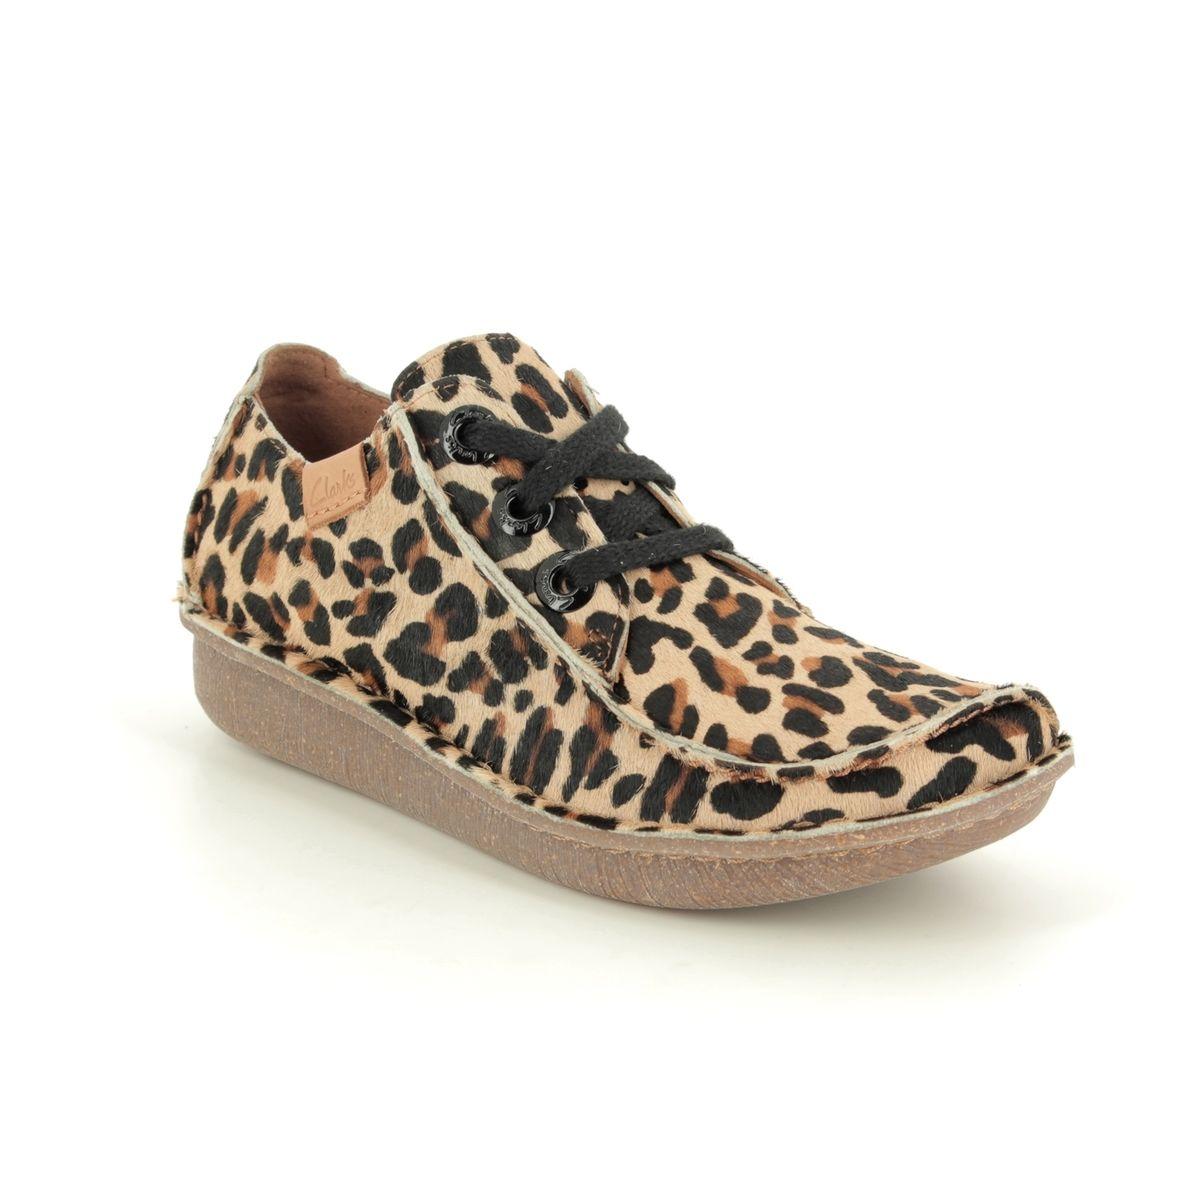 clarks shoes leopard print